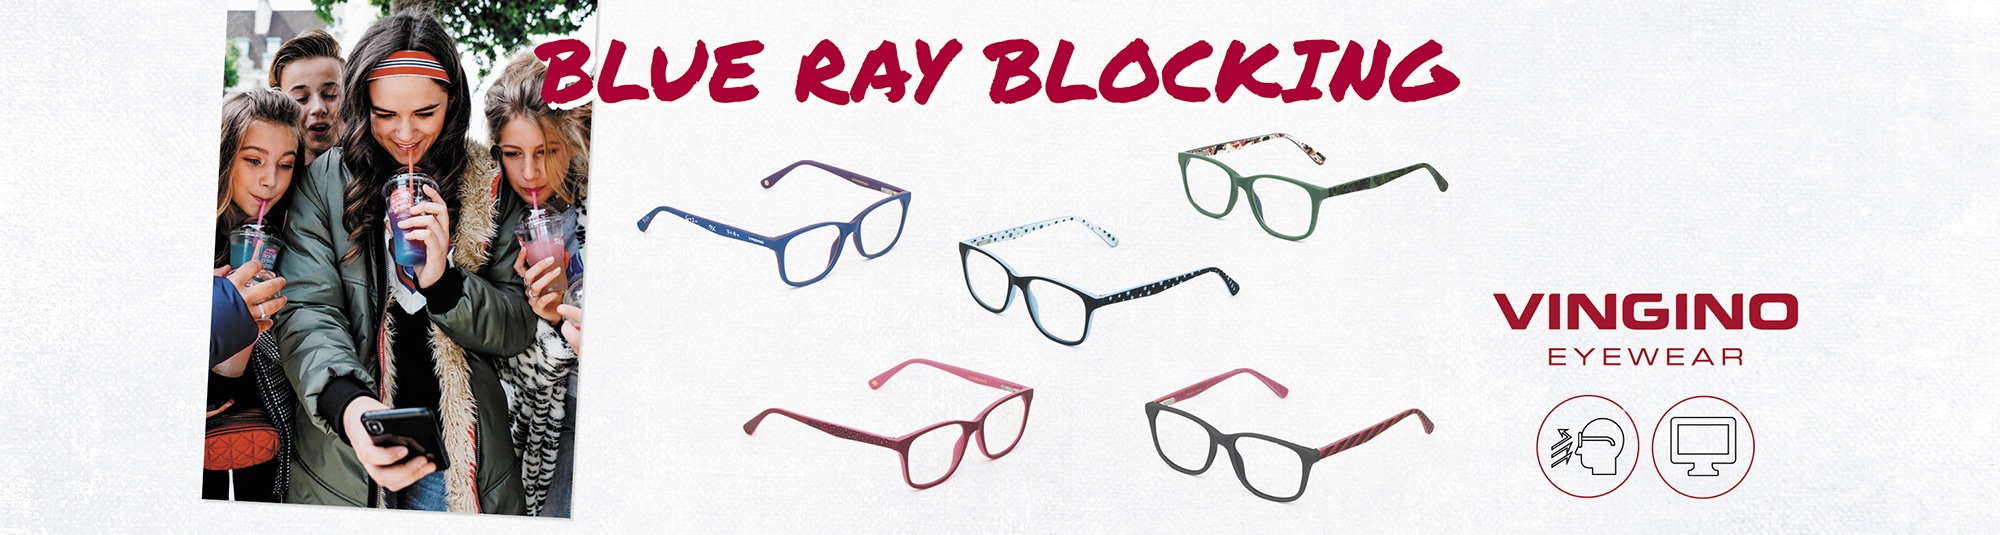 Blue Ray blocking collectie: gemaakt voor de bescherming van kinderogen